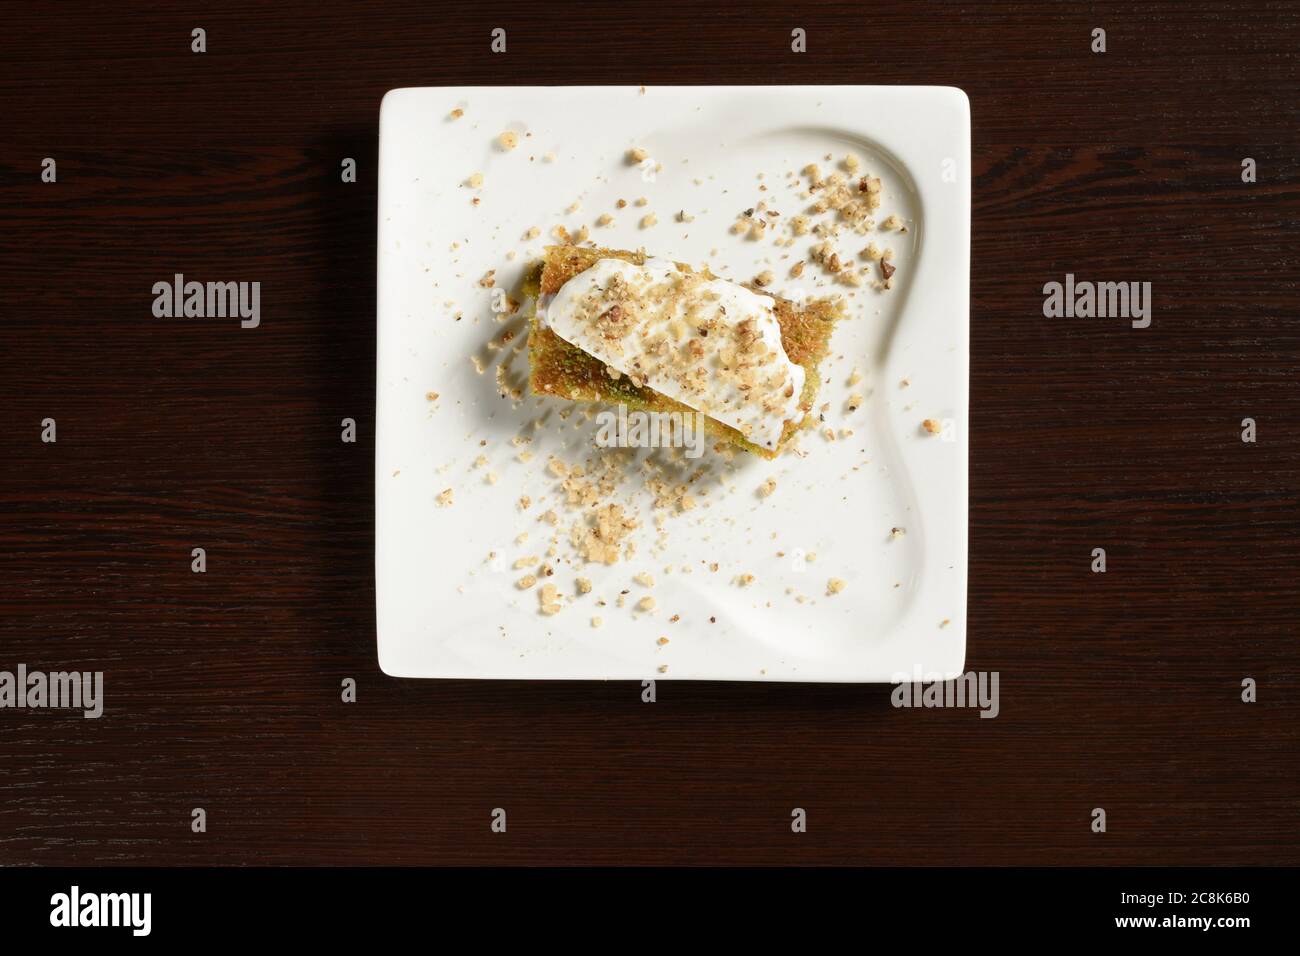 Pistazien Türkische Baklava mit Eis auf einem quadratischen Teller, Draufsicht. Fotos für Restaurant- und Cafe-Menüs Stockfoto